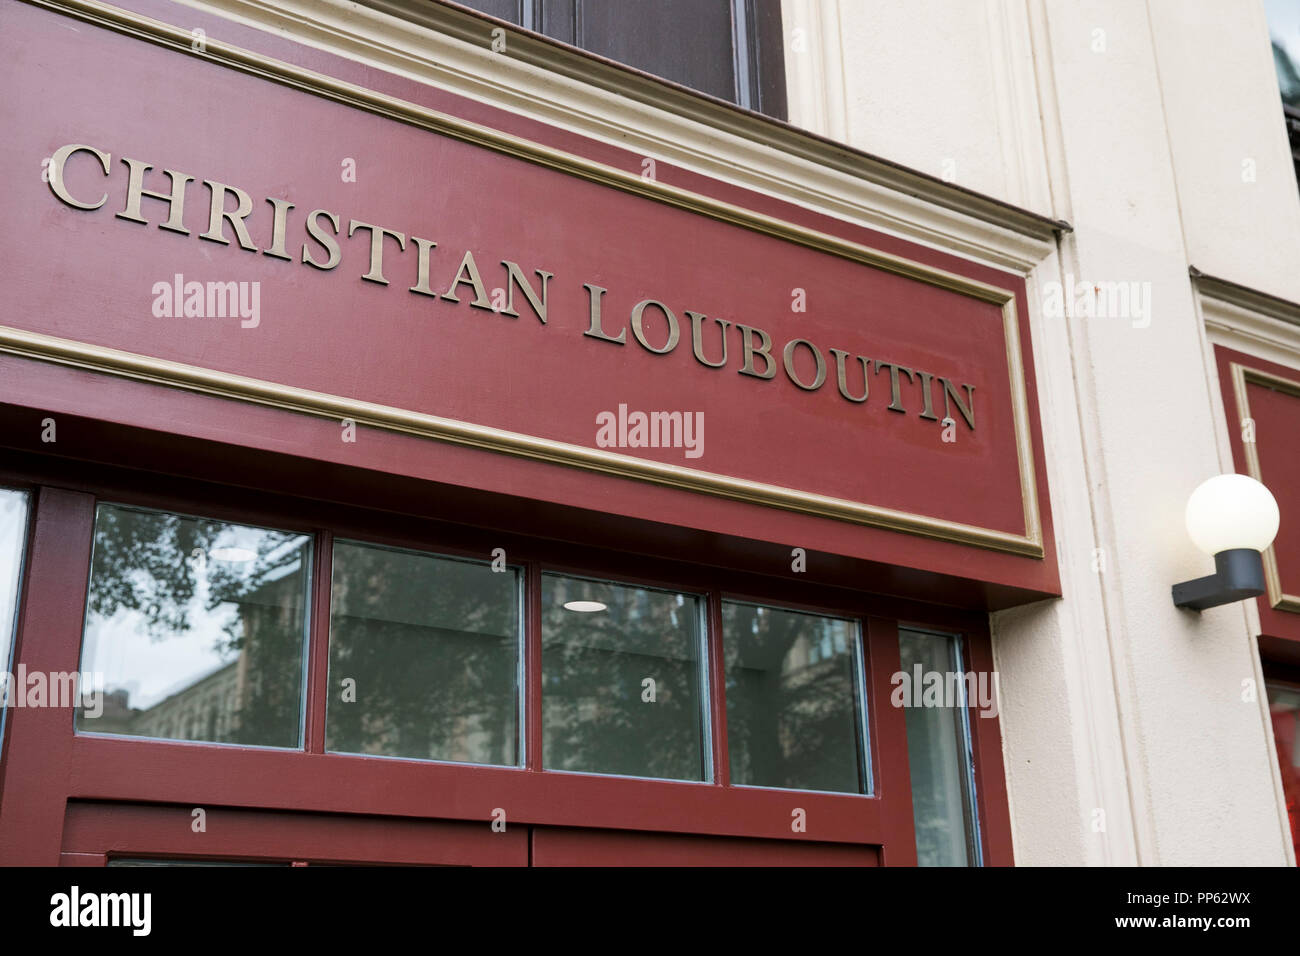 Louboutin Stockfotos und -bilder Kaufen - Alamy